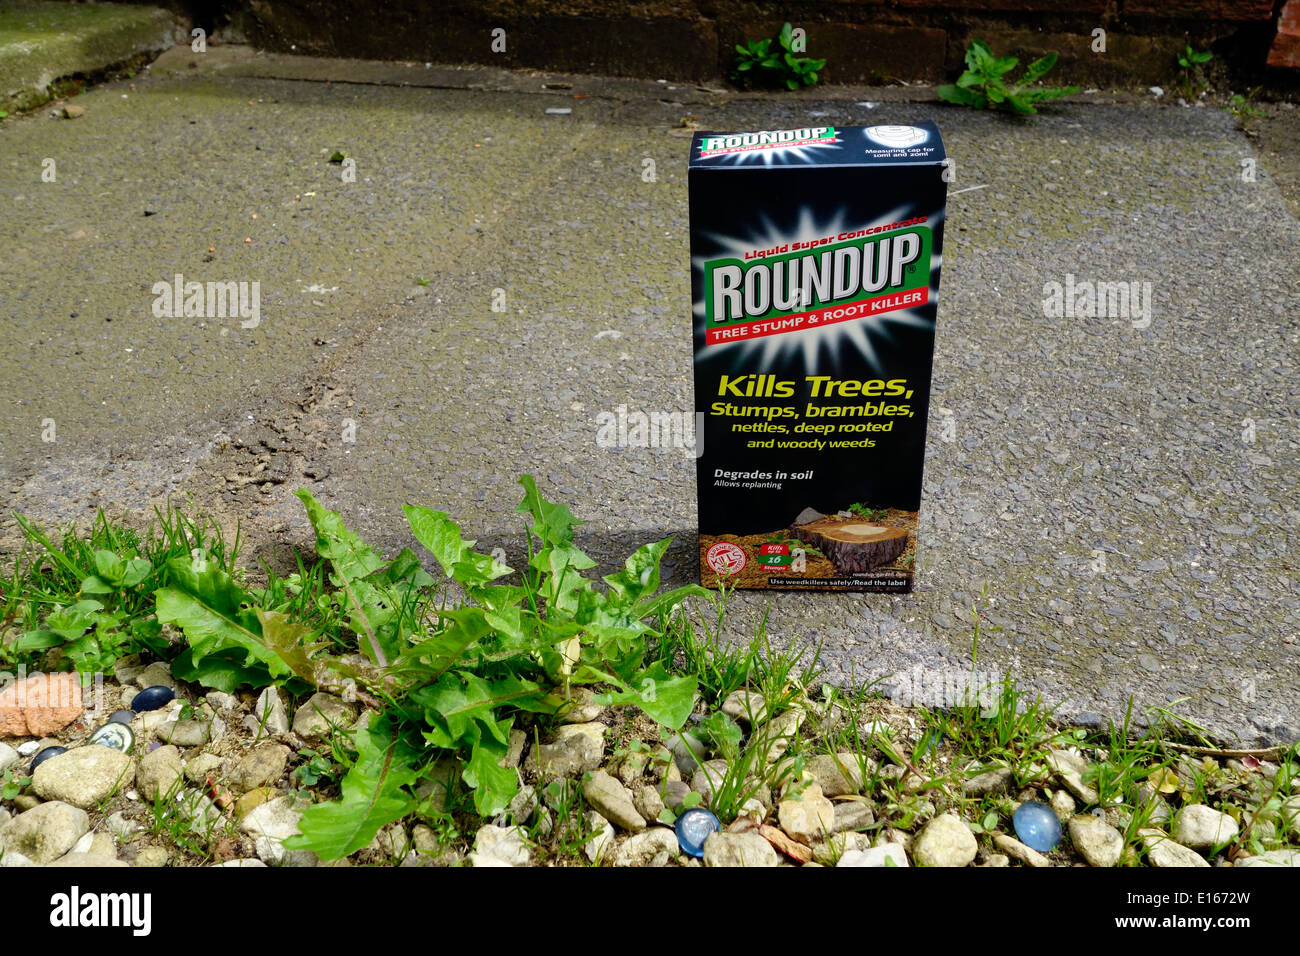 Roundup Baumstumpf und Stamm Killer Herbizid, UK Stockfoto